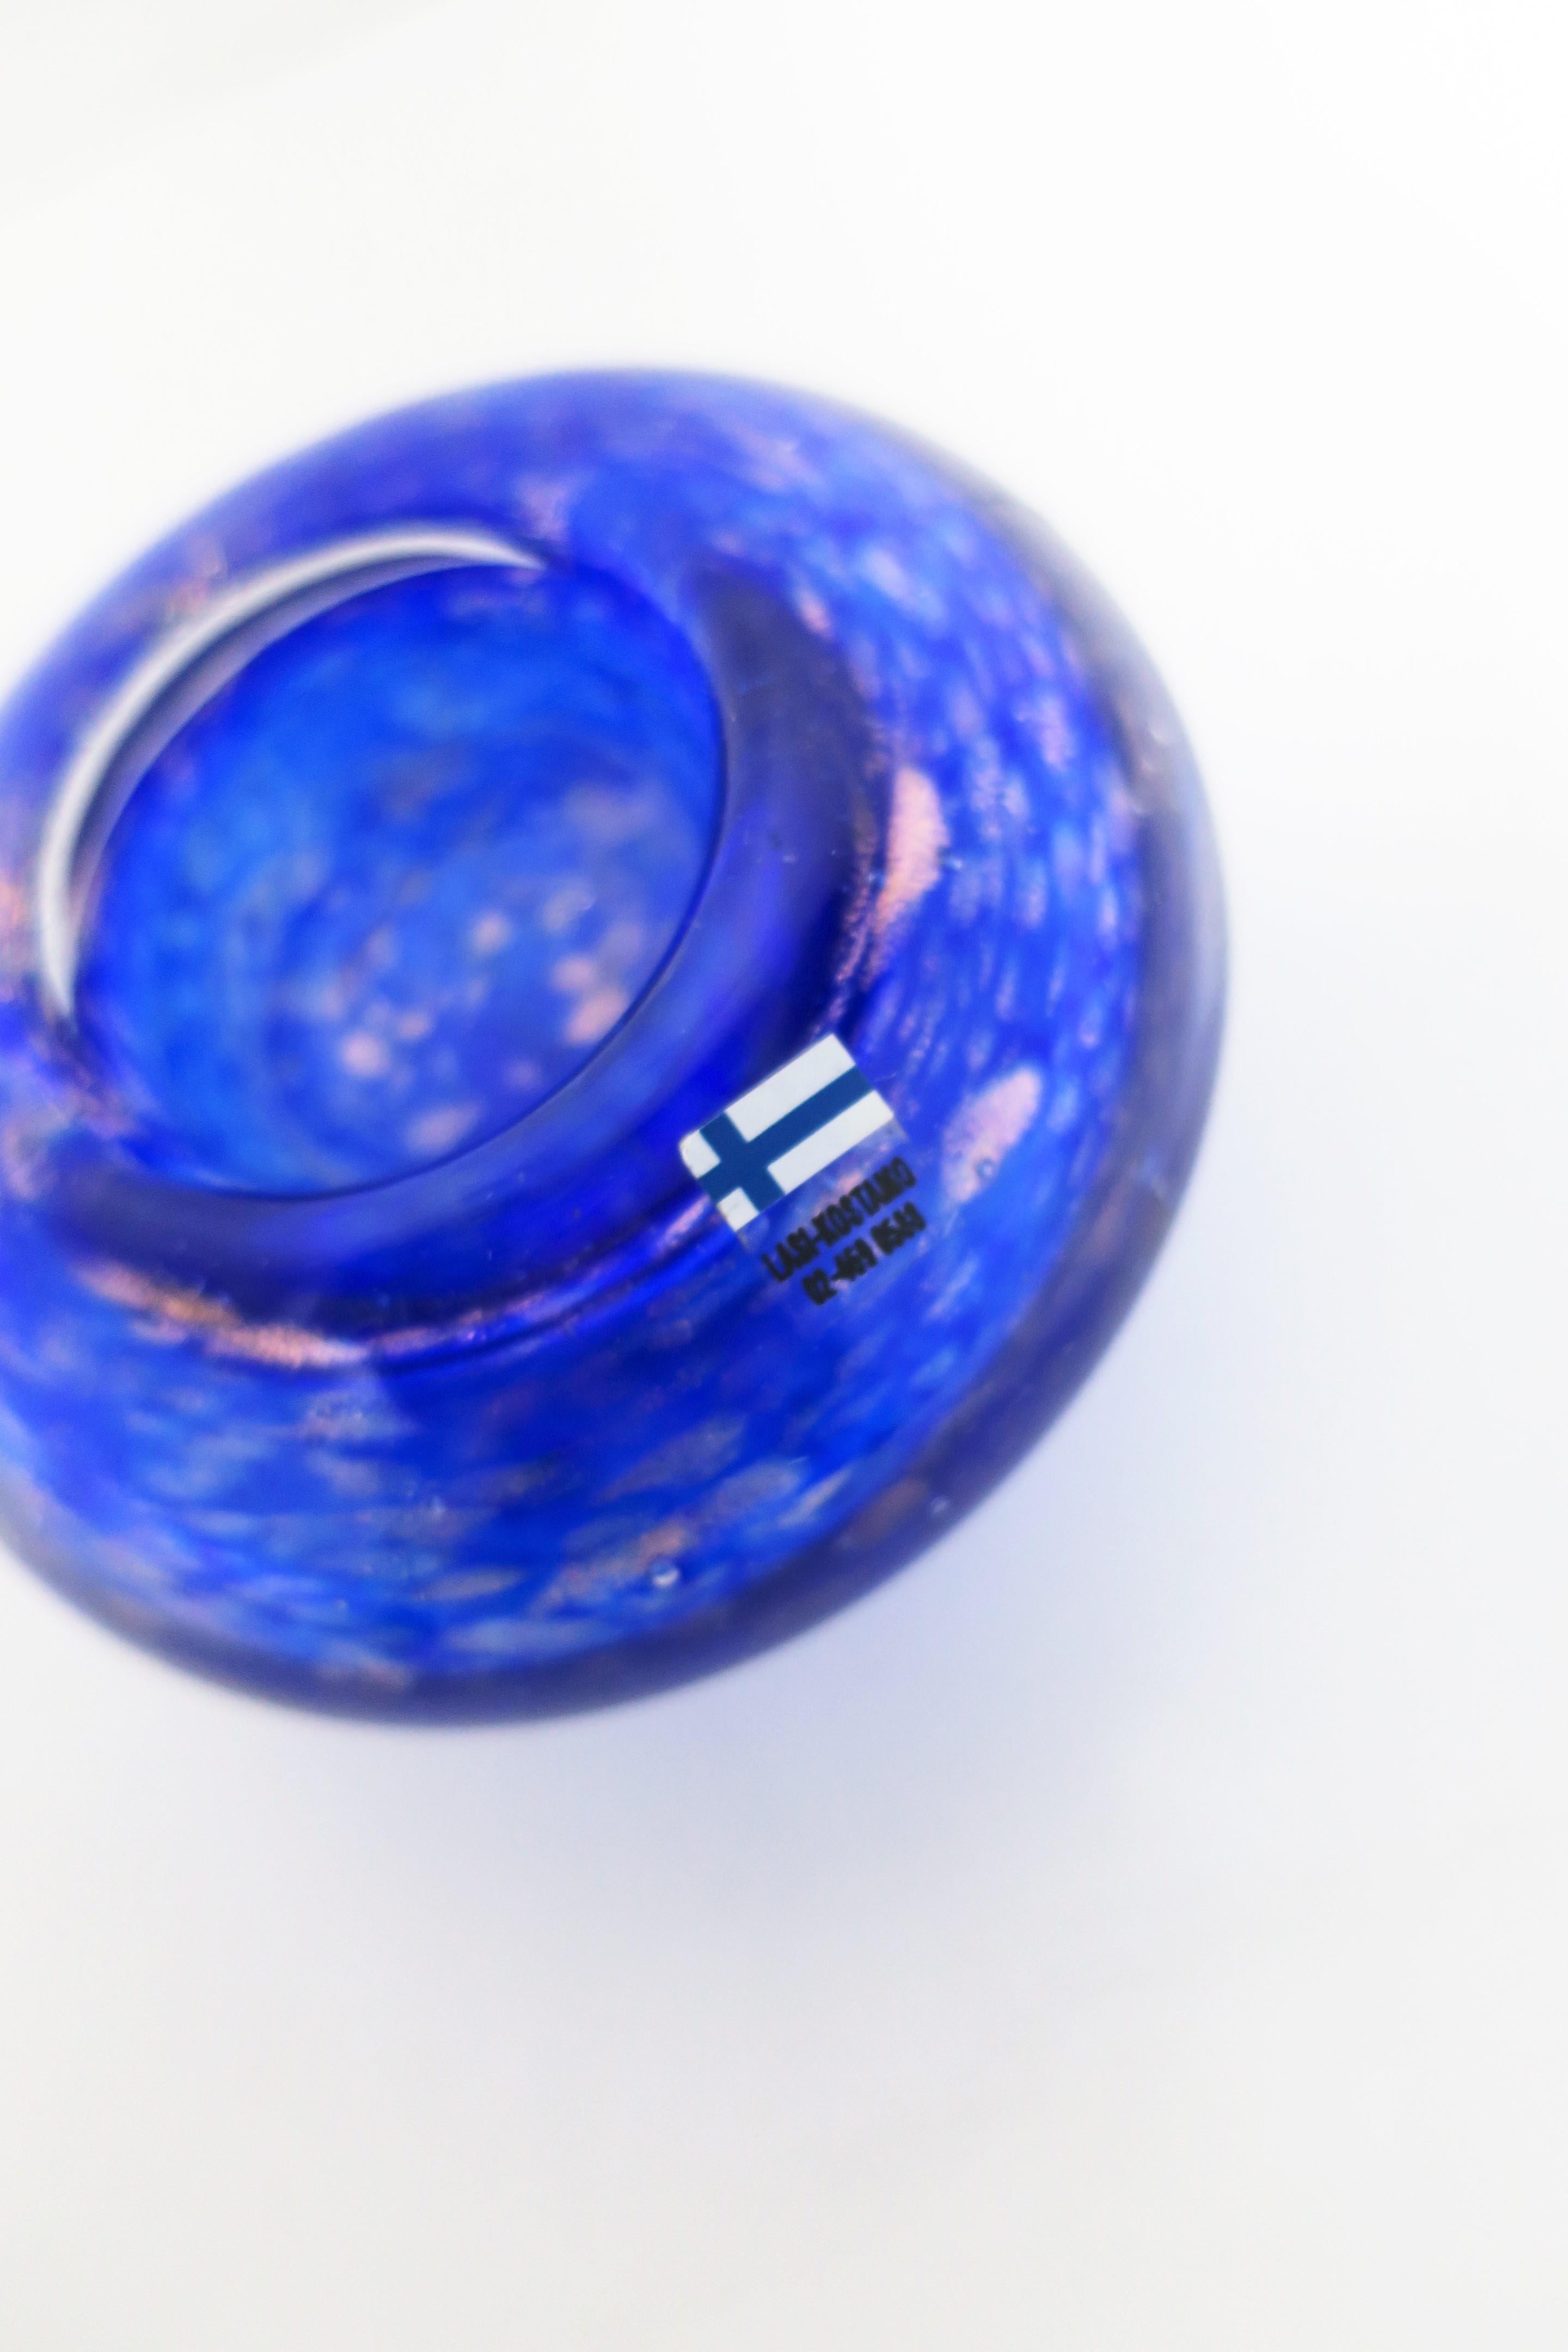 Scandinavian Cobalt Blue Art Glass Votive Candle Holder 5